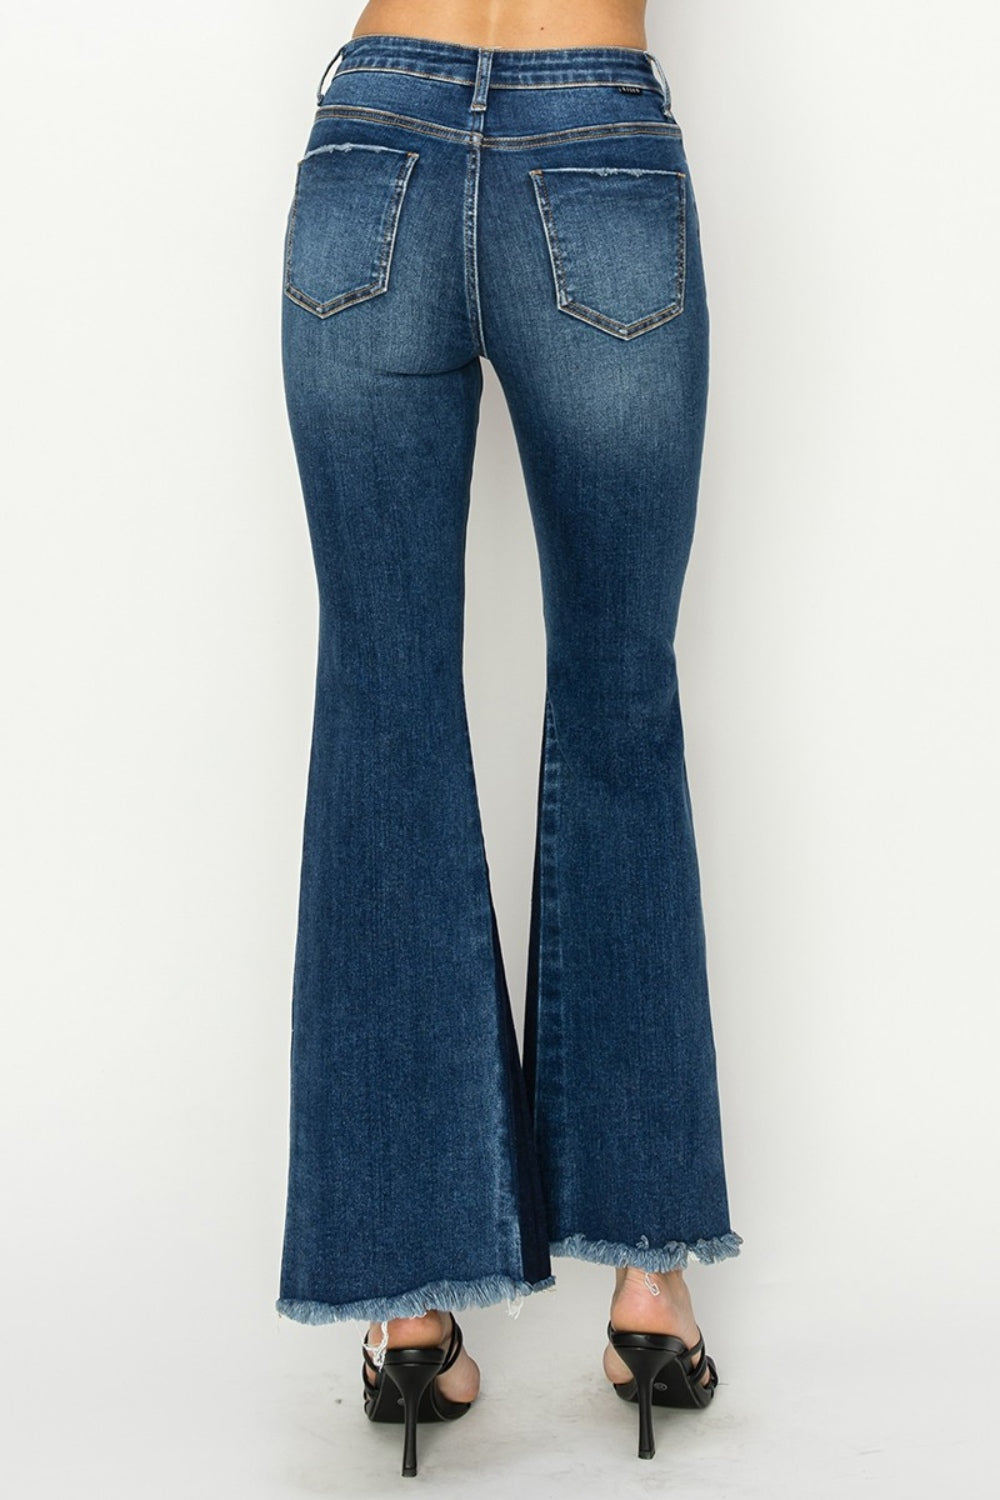 RISEN - Shadow Seam Slit Flare Jeans - Dark Wash - Inspired Eye Boutique